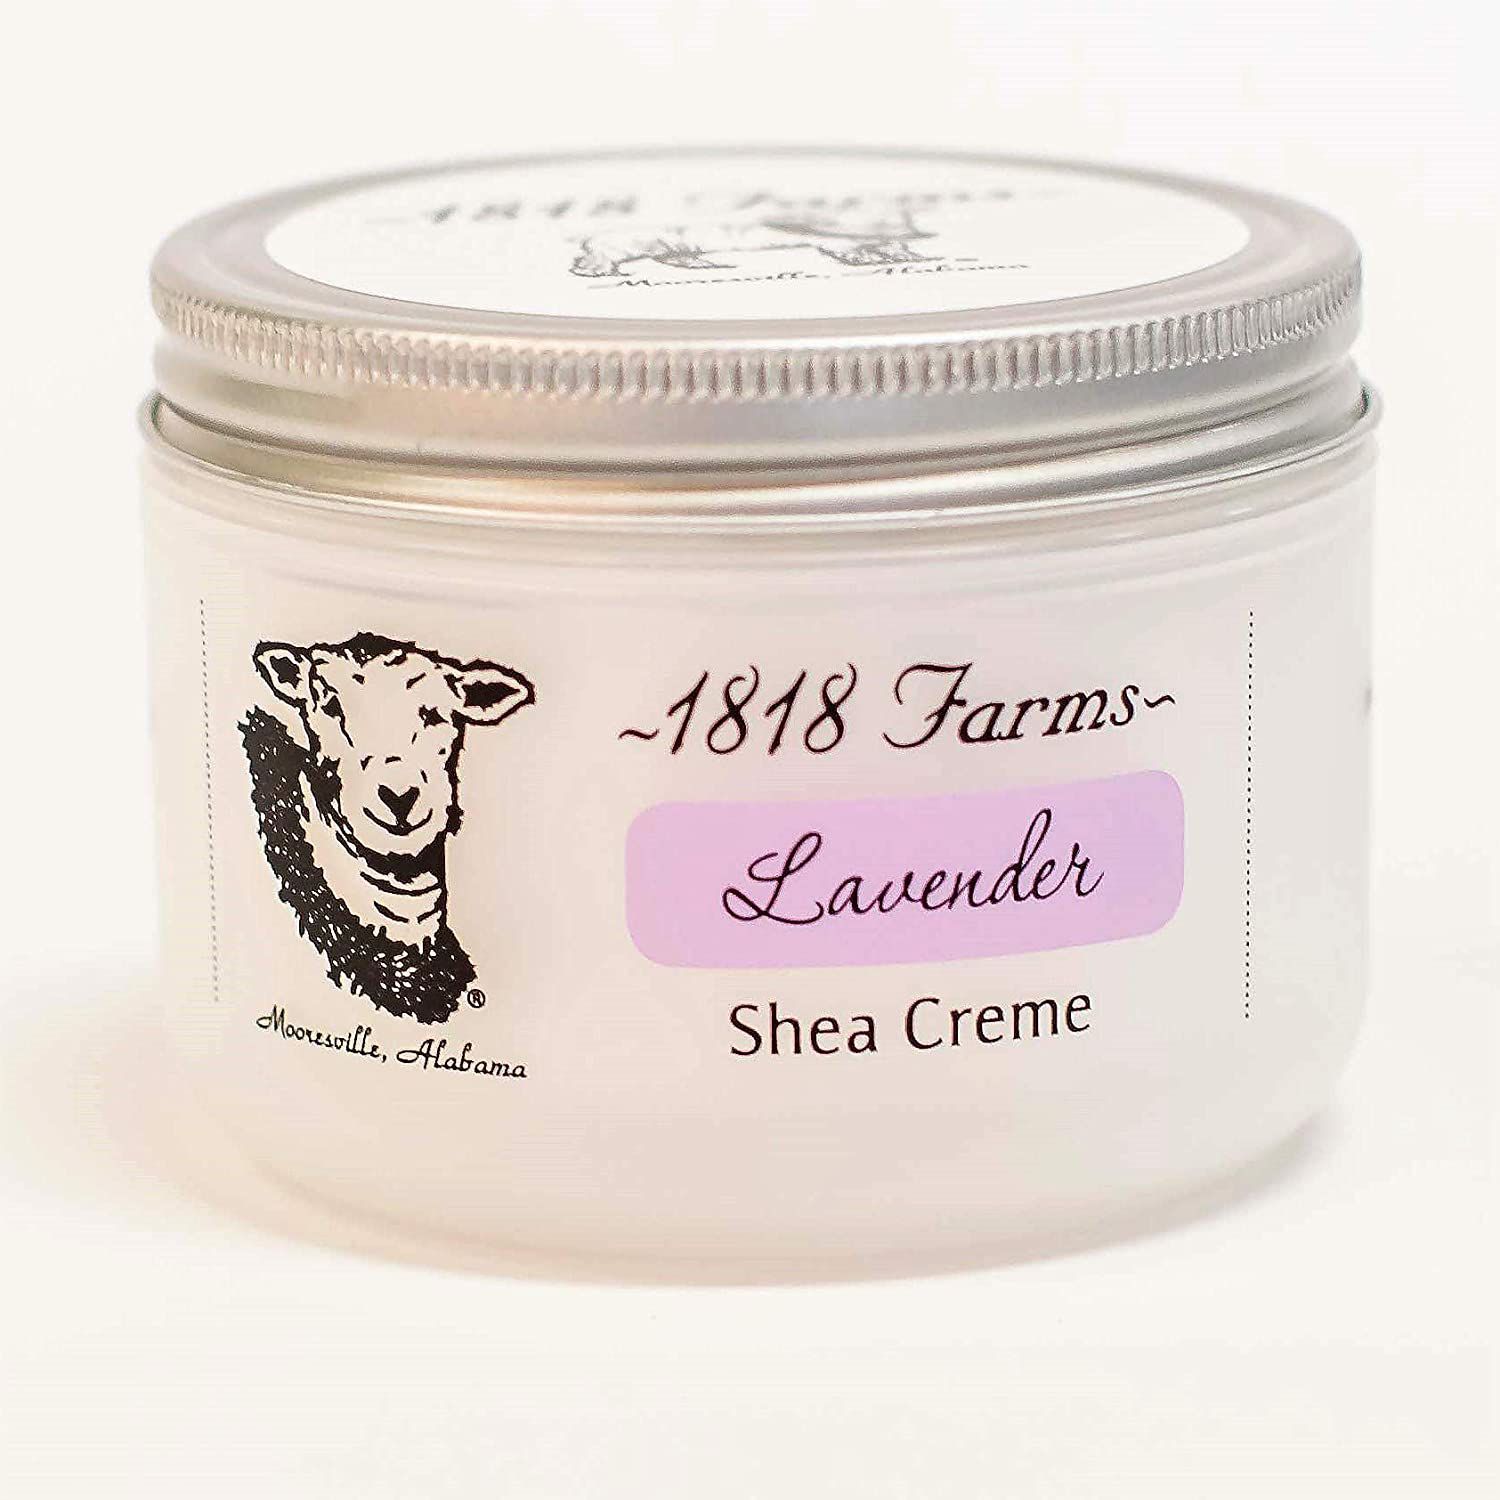 1818 farms shea cream